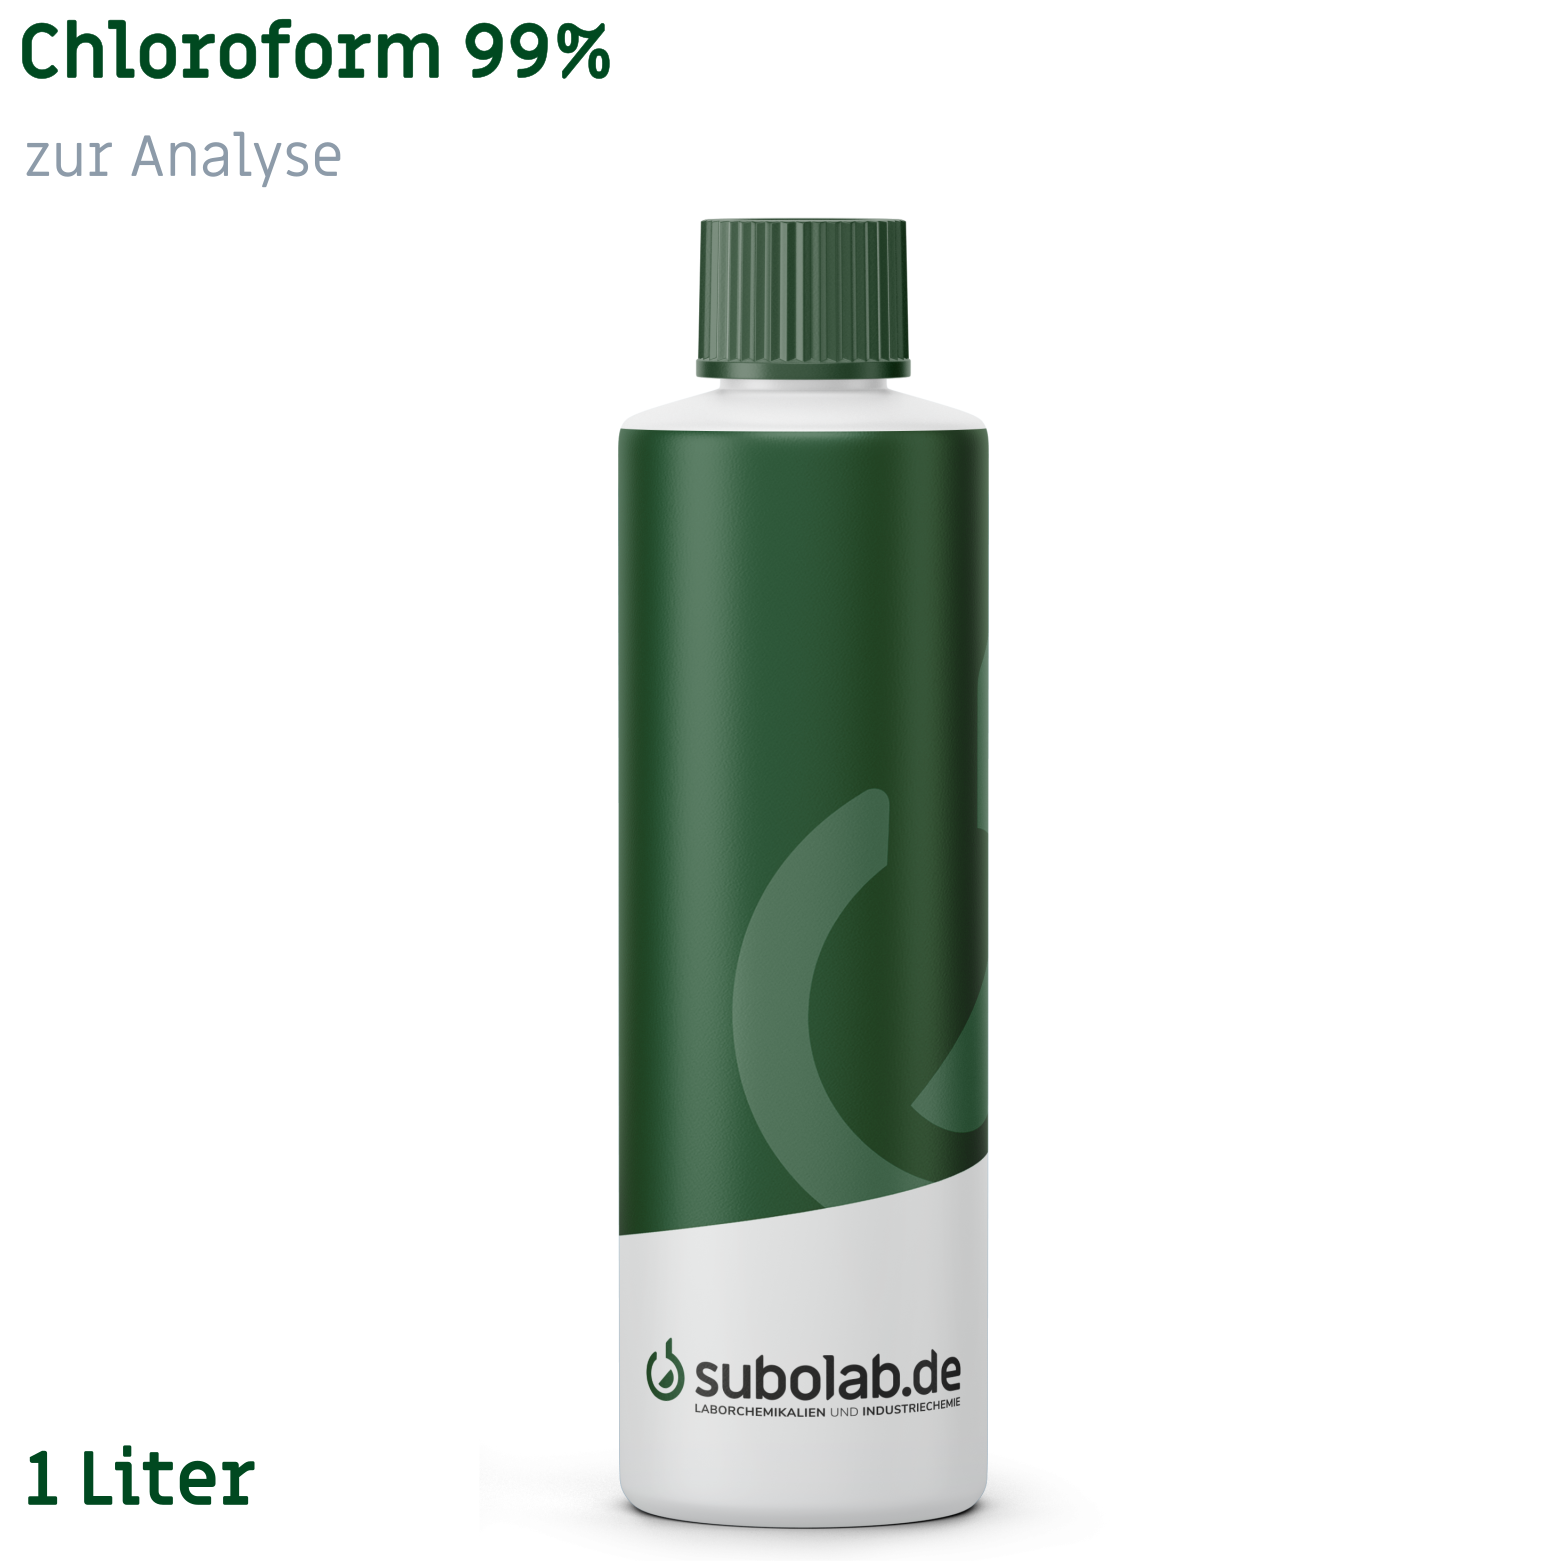 Bild von Chloroform 99% zur Analyse (1 Liter)